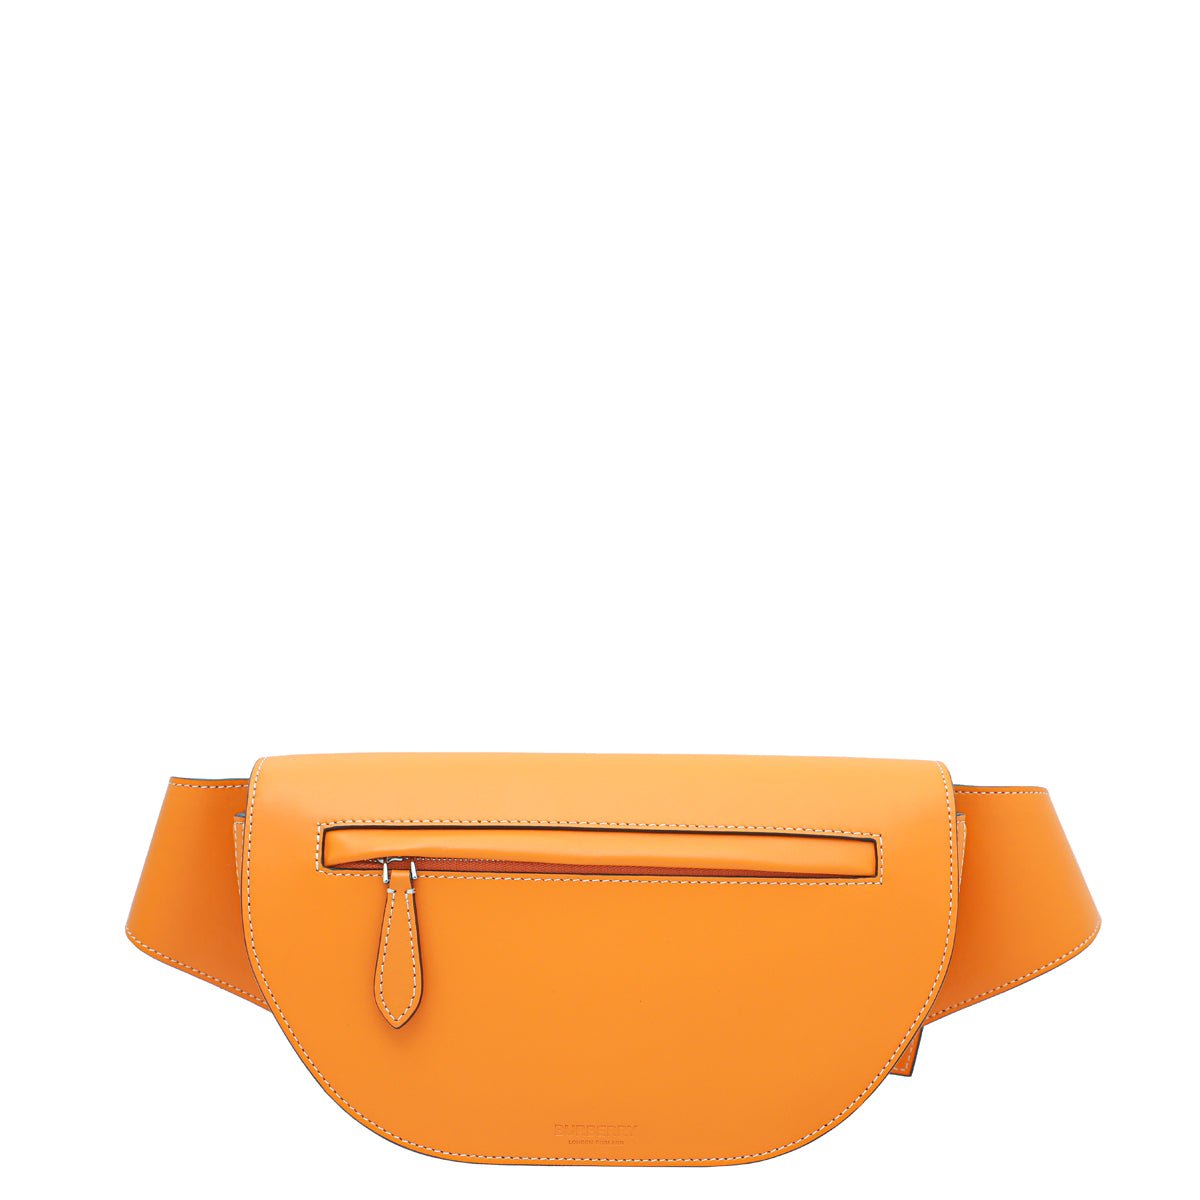 Burberry // Orange Leather Canterbury Check Bag – VSP Consignment